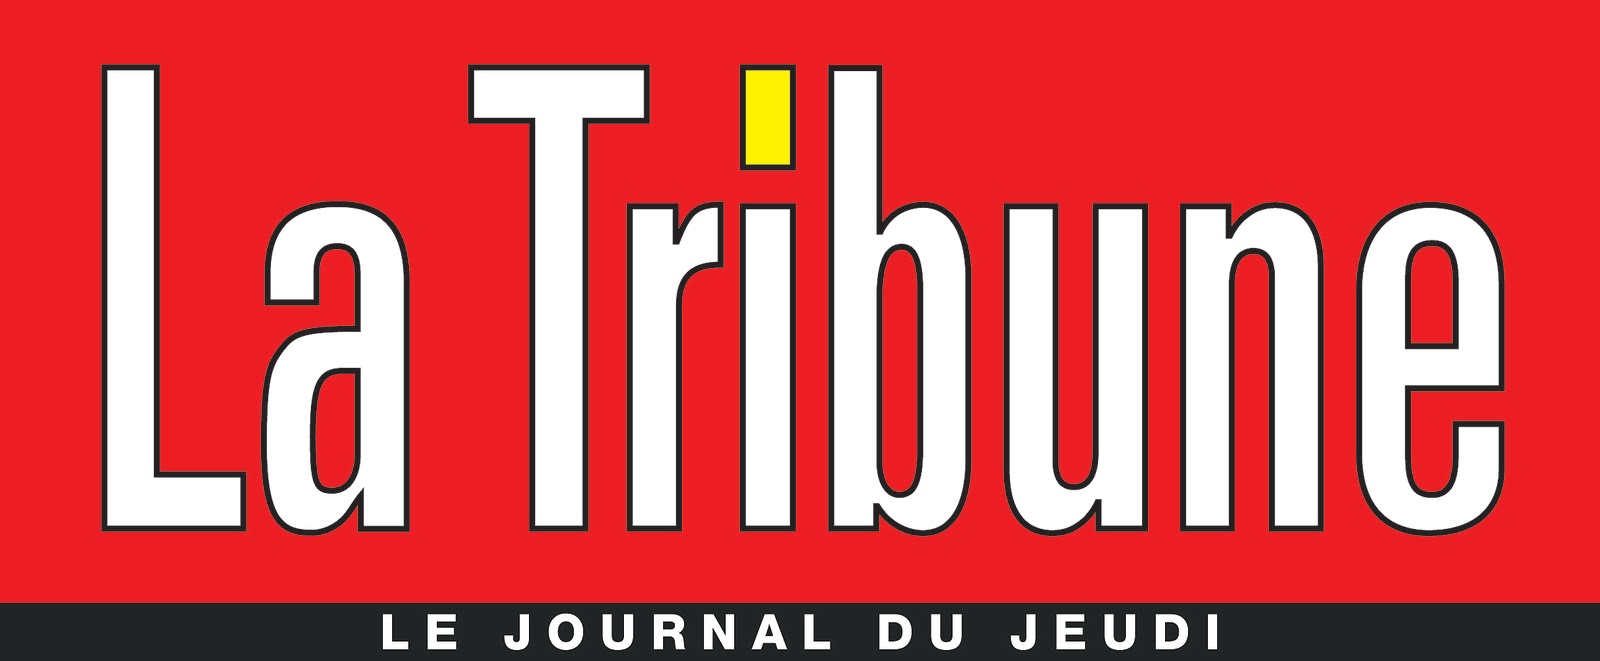 Articles "La Tribune" sur Saint-Remèze du 28 octobre 2021